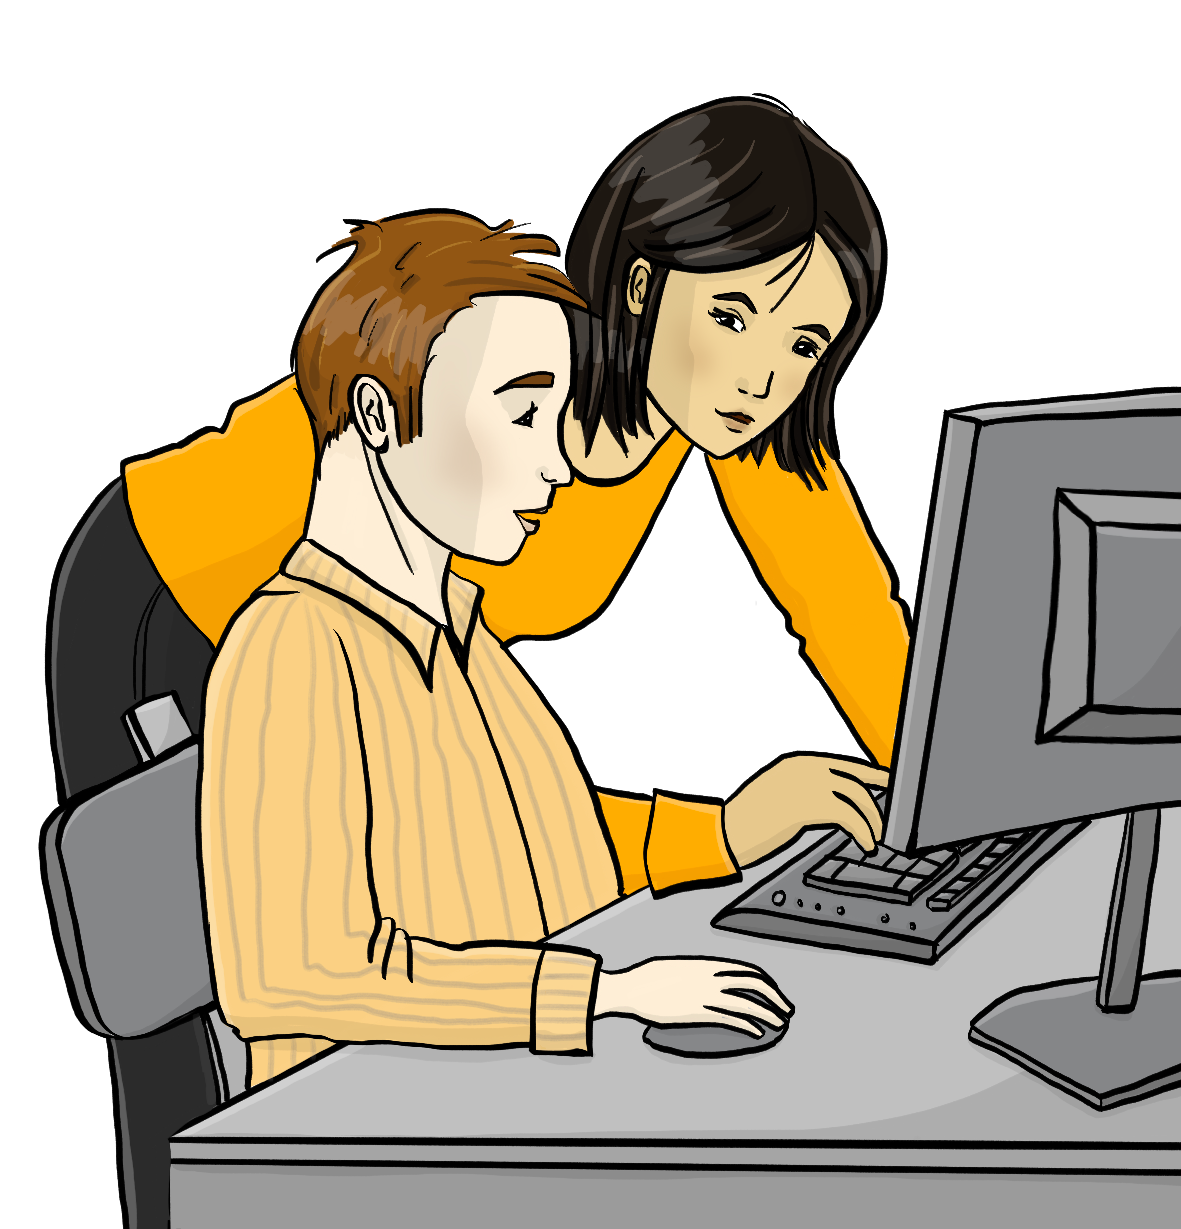 Ein Mann sitzt an einem Schreibtisch vor einem Computer. Eine Frau steht daneben und beugt sich zu dem Mann herunter. Sie zeigt auf den Bildschirm.